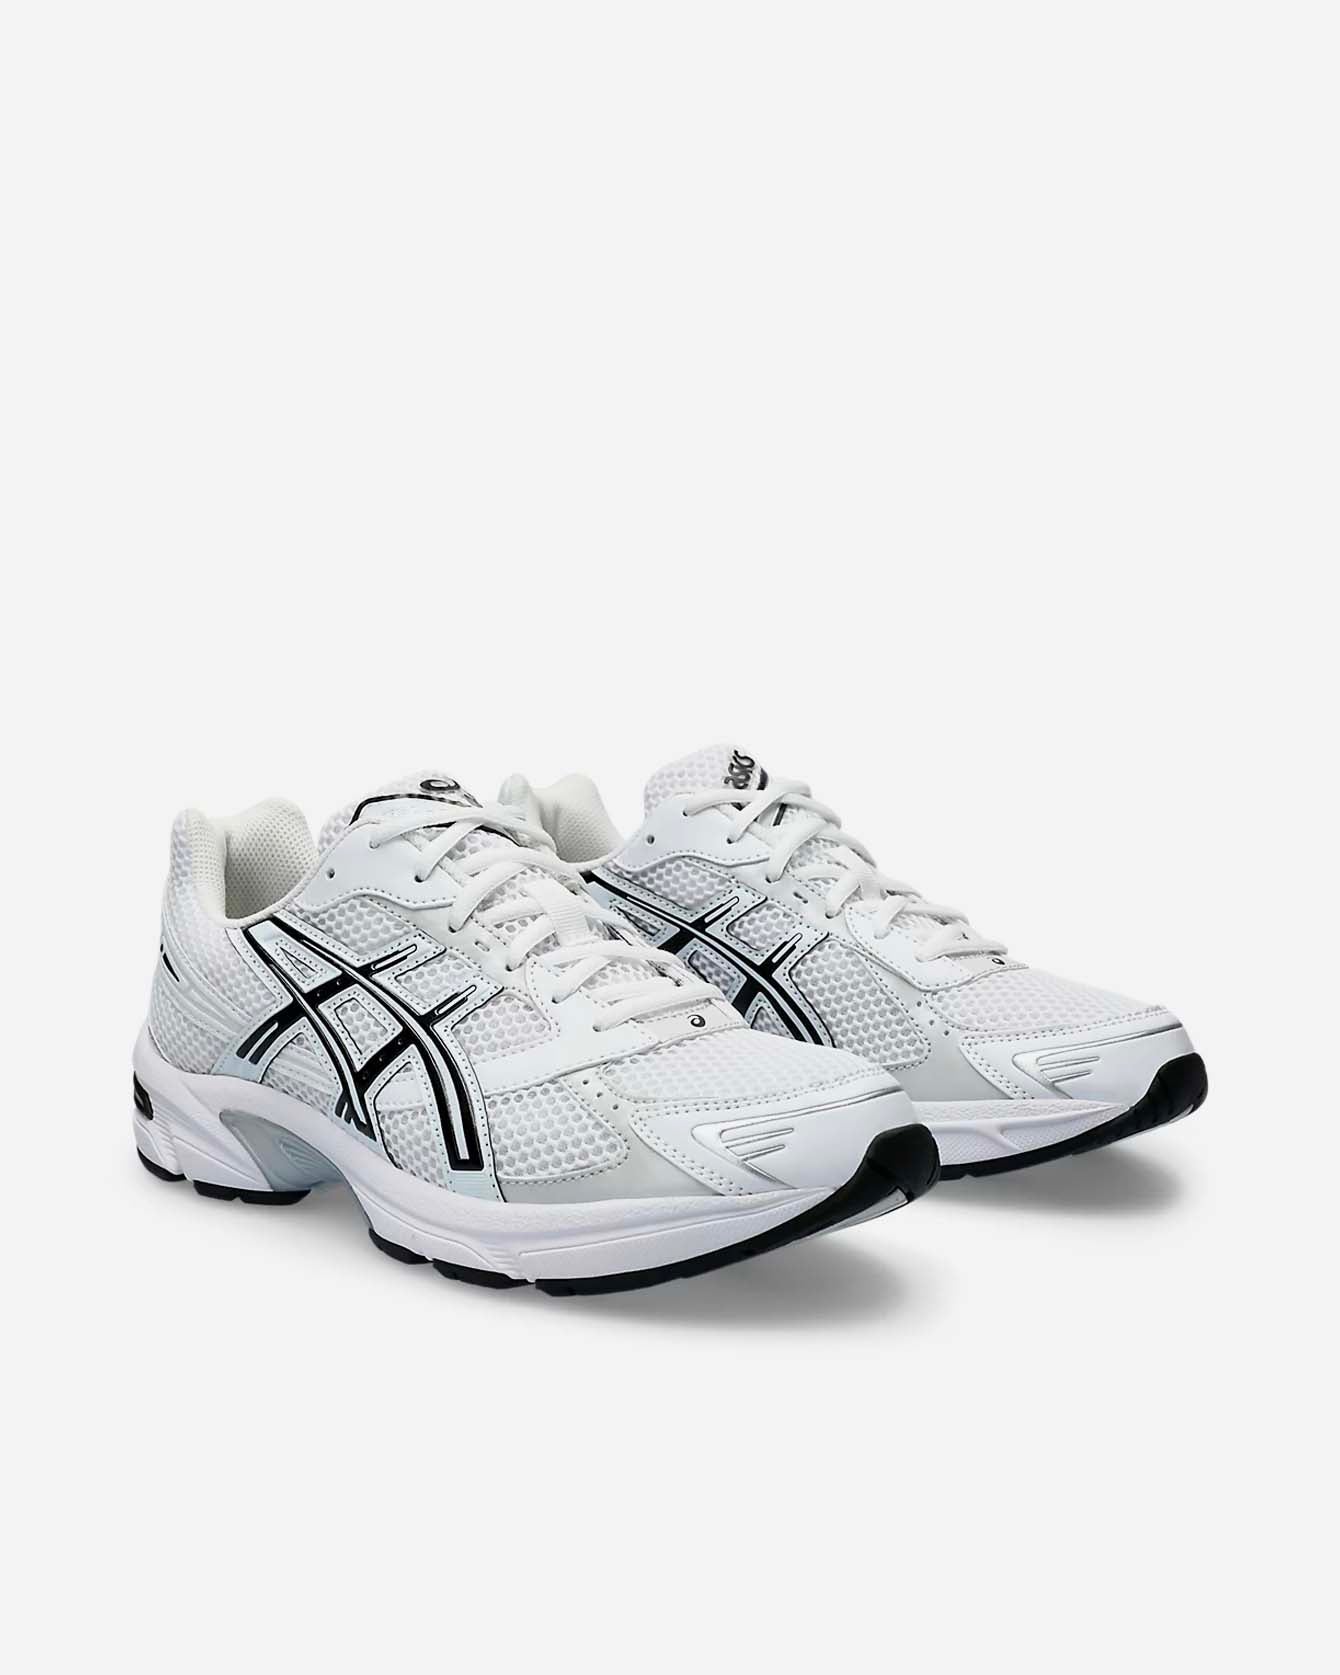 asics unisex sneakers gel 1130 white black model #1202A164_113